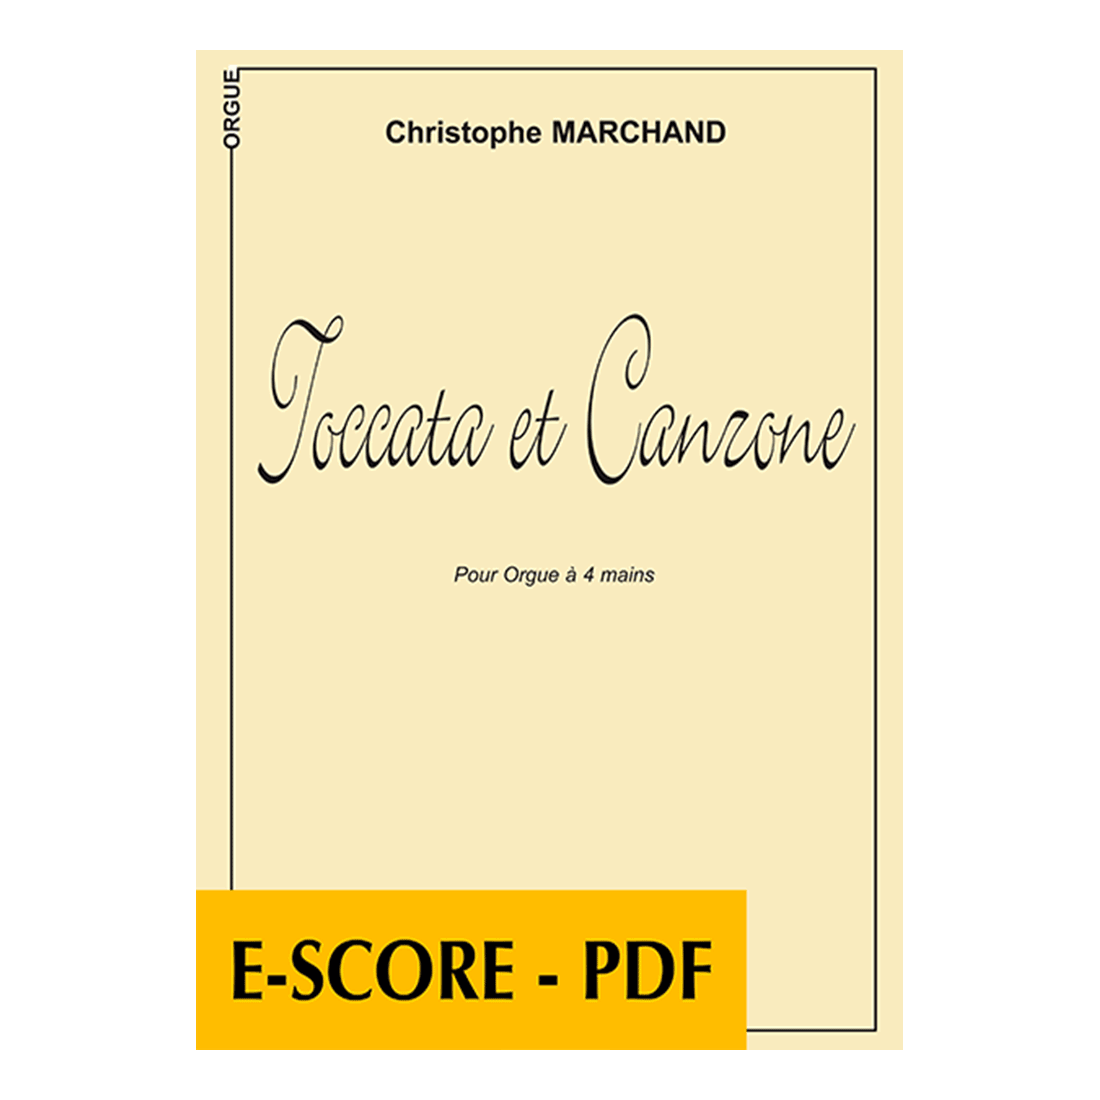 Toccata et canzone pour orgue à 4 mains - E-score PDF